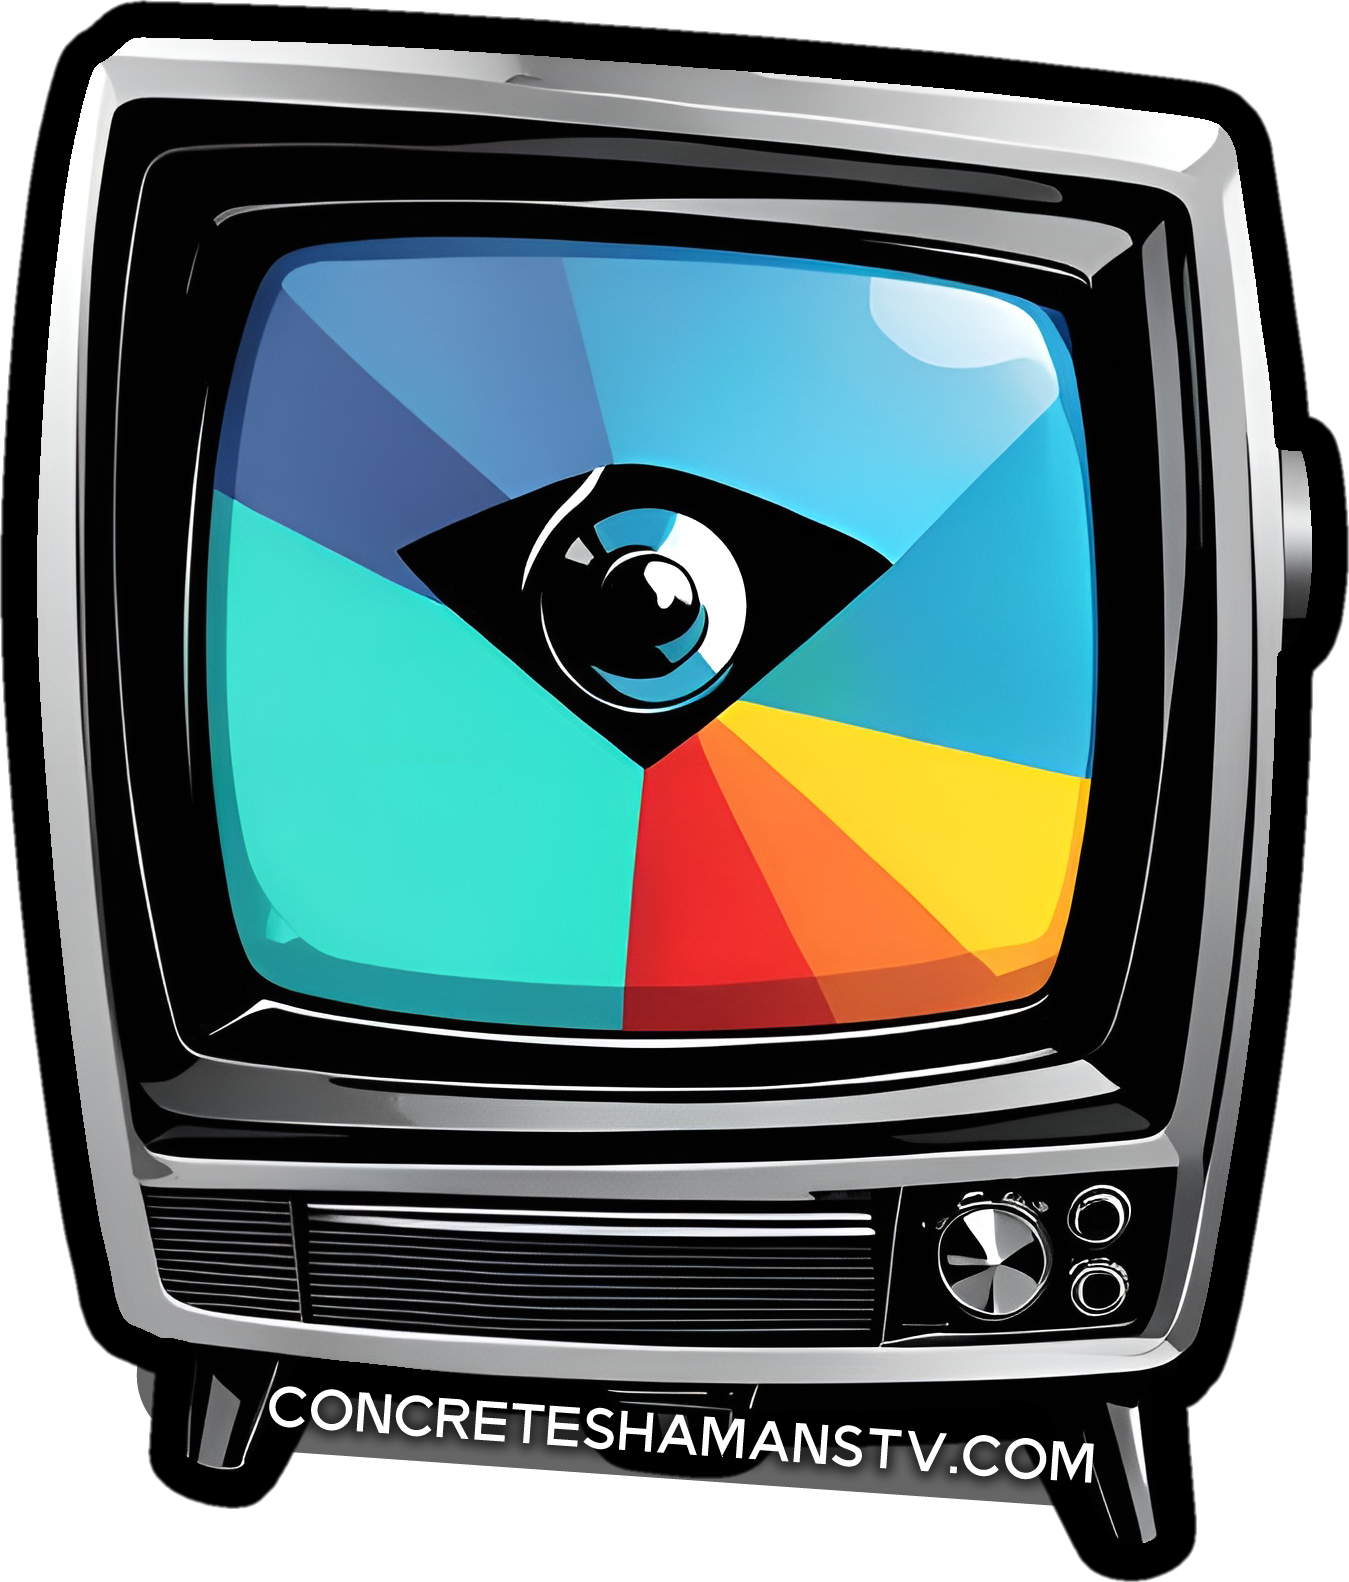 Concrete Shamans TV